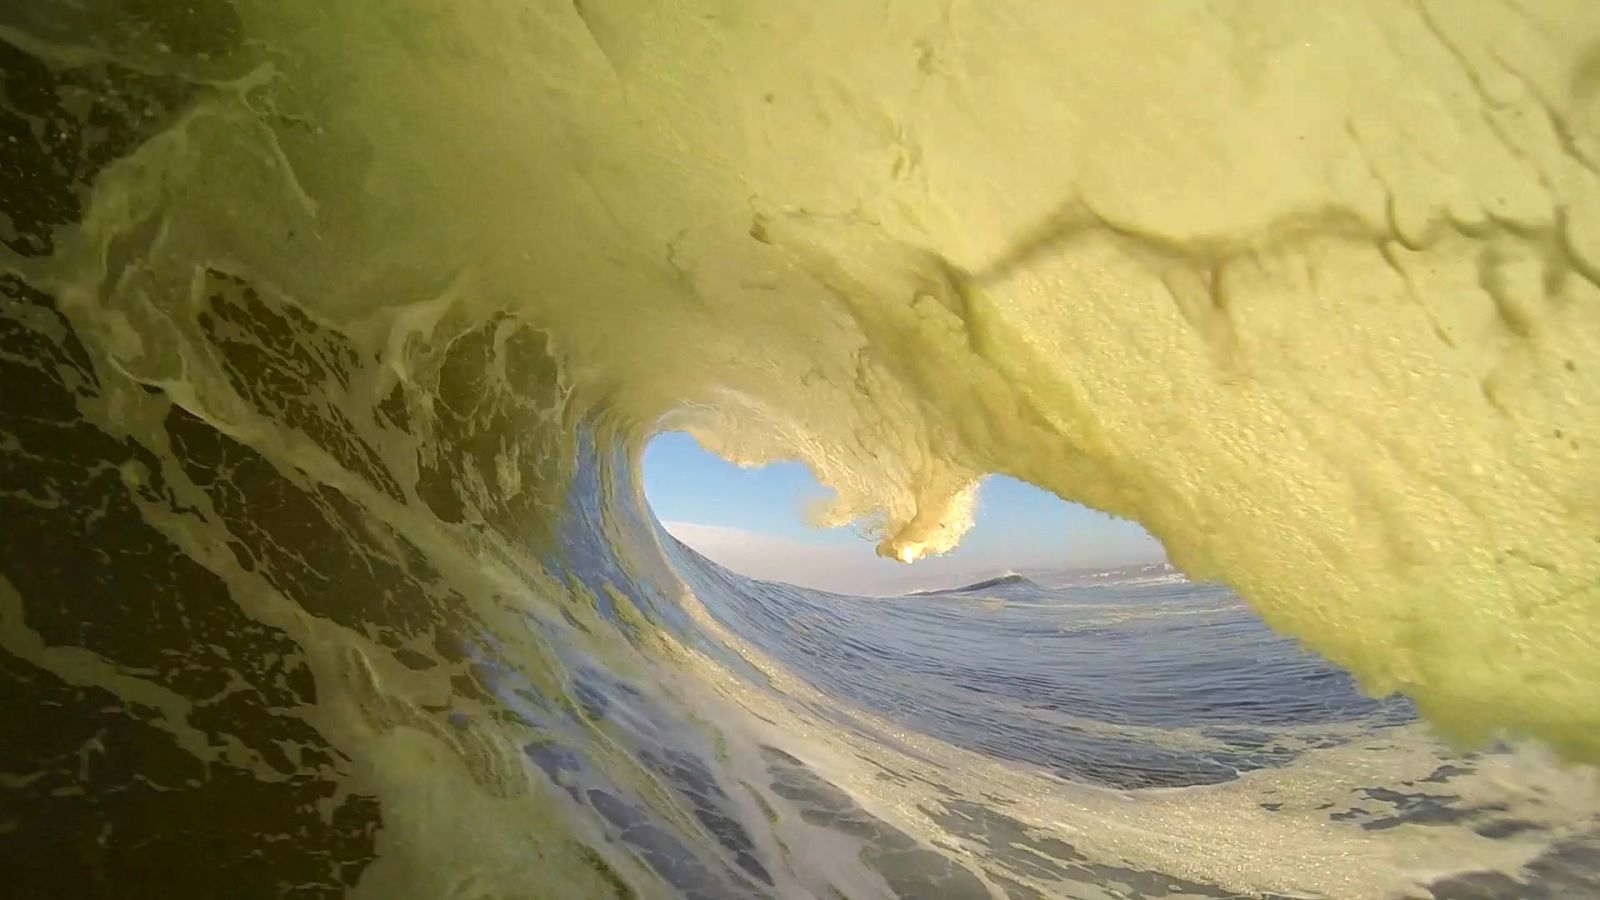 Um surfista pega 2 tubos em uma mesma onda